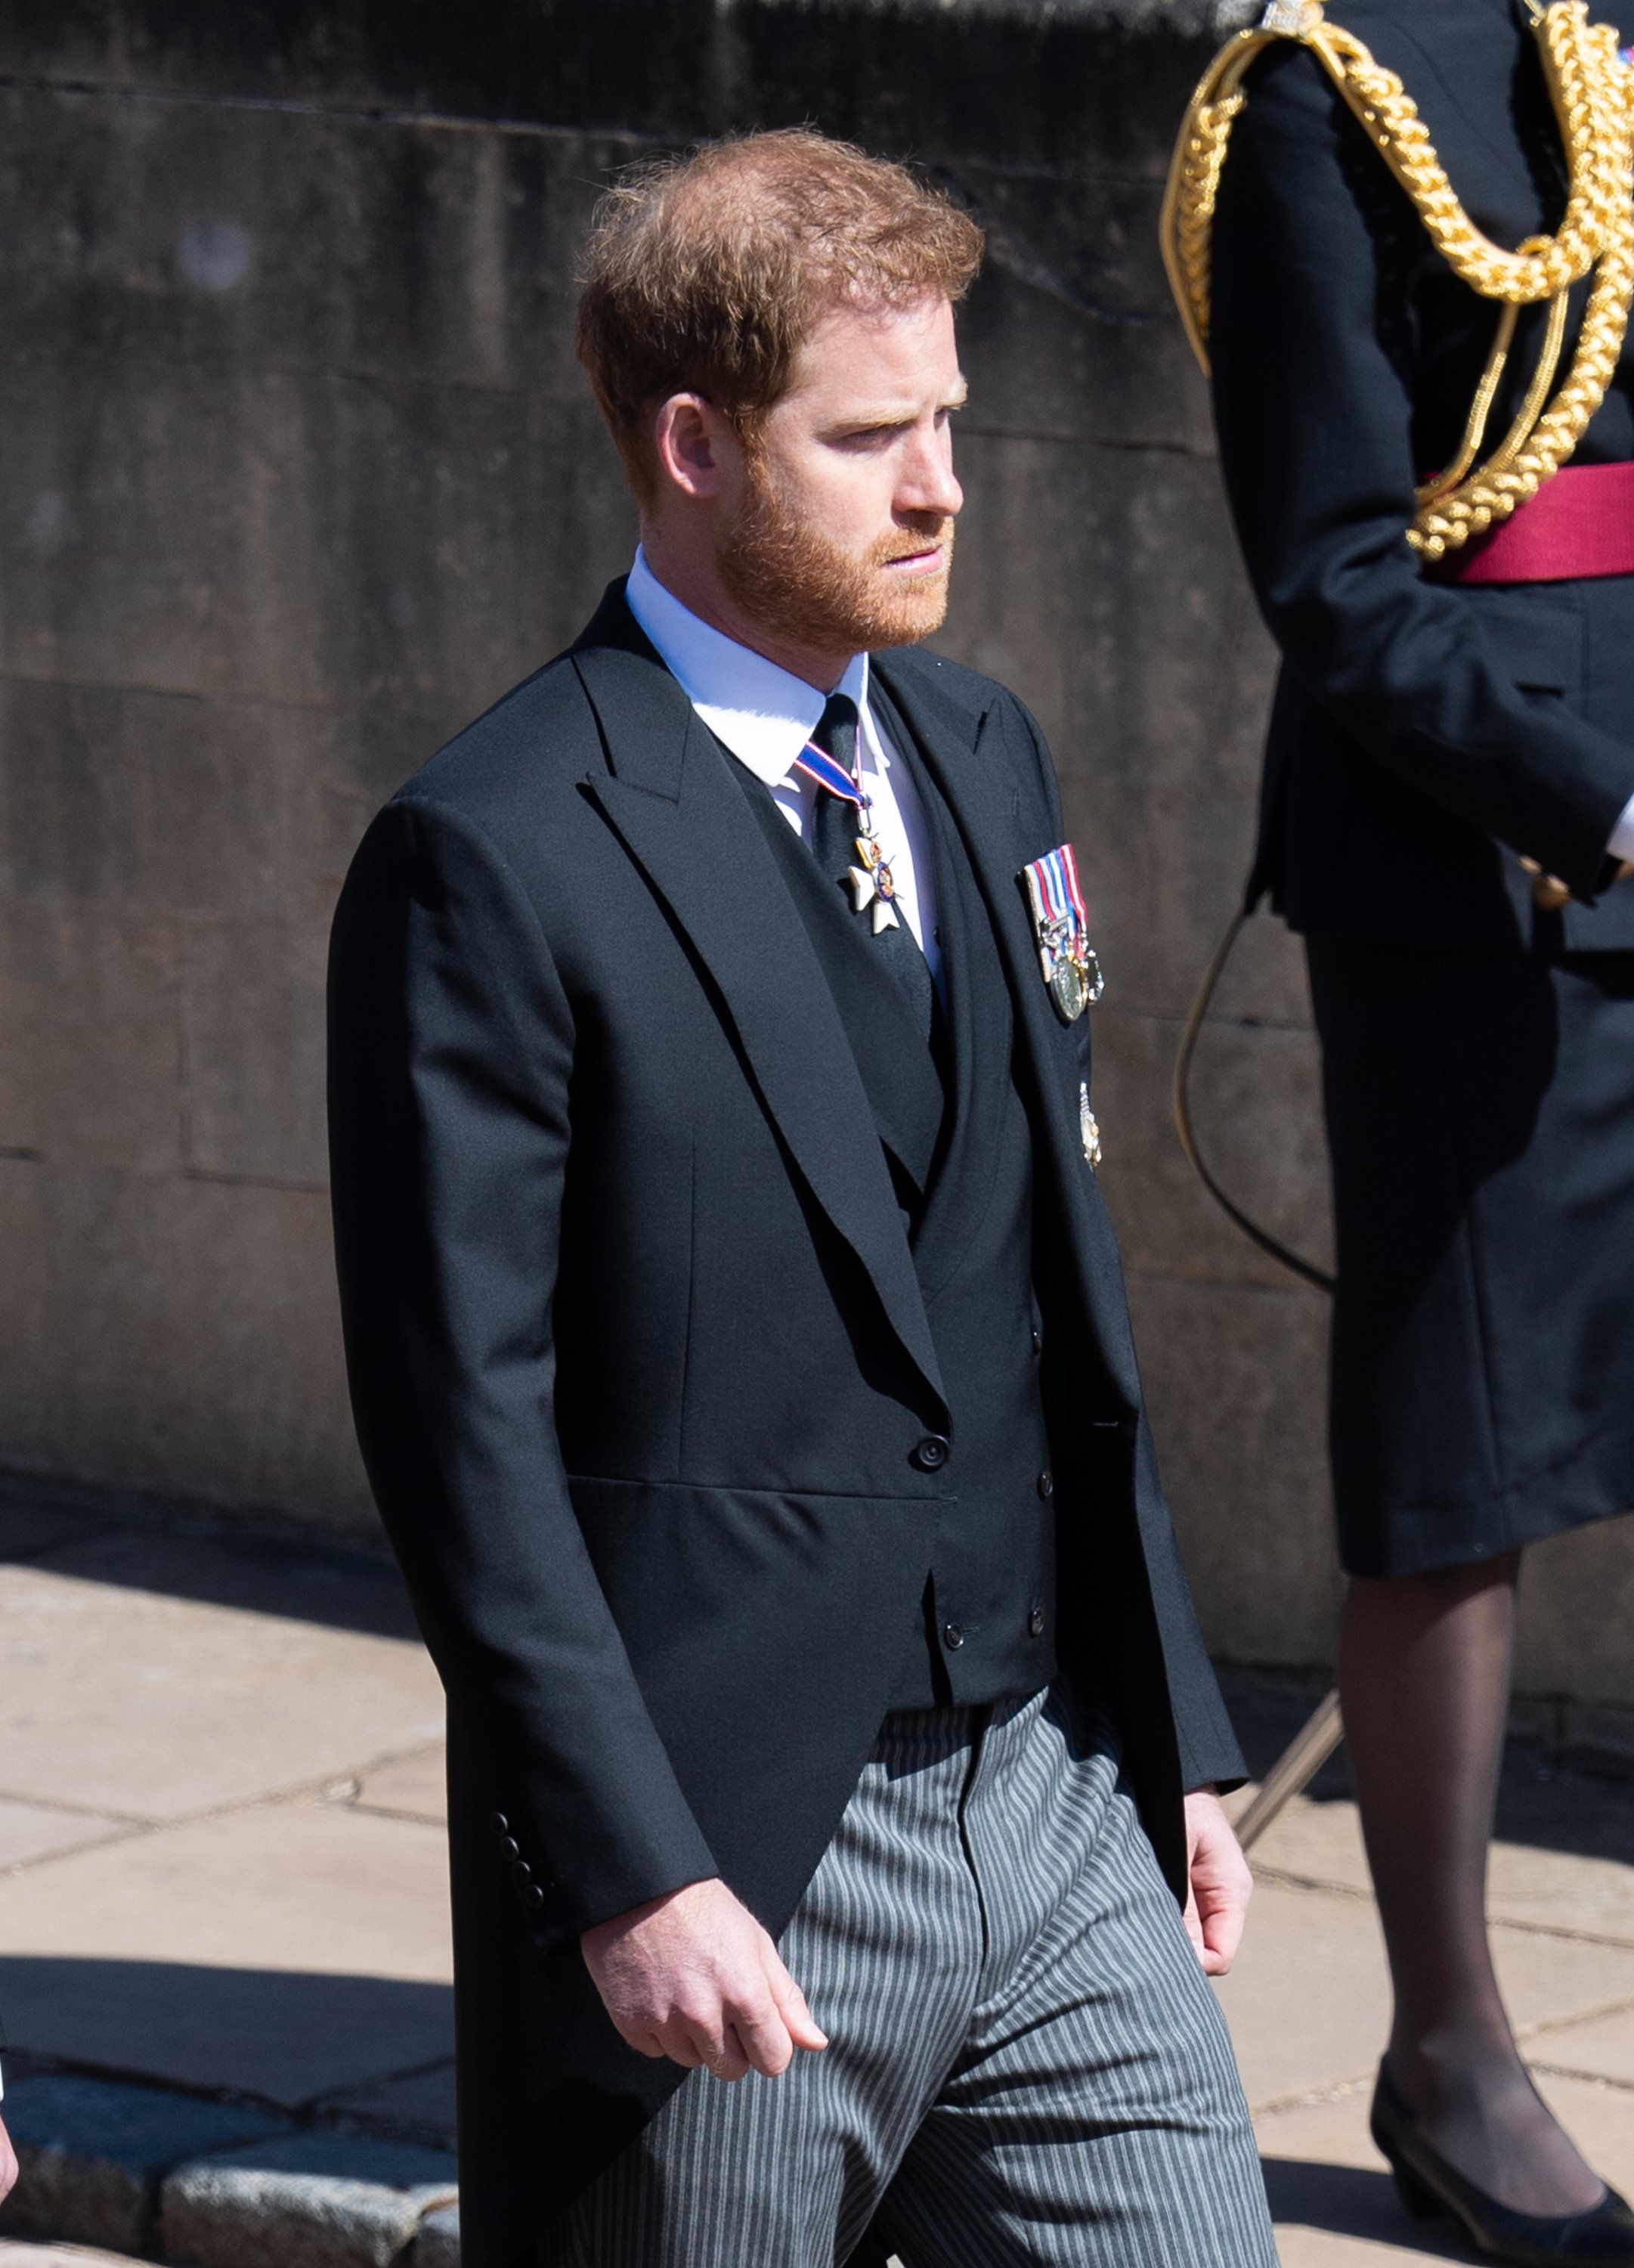 El príncipe Harry, duque de Sussex durante el funeral del príncipe Philip, duque de Edimburgo el 17 de abril de 2021 en Windsor | Foto: Getty Images